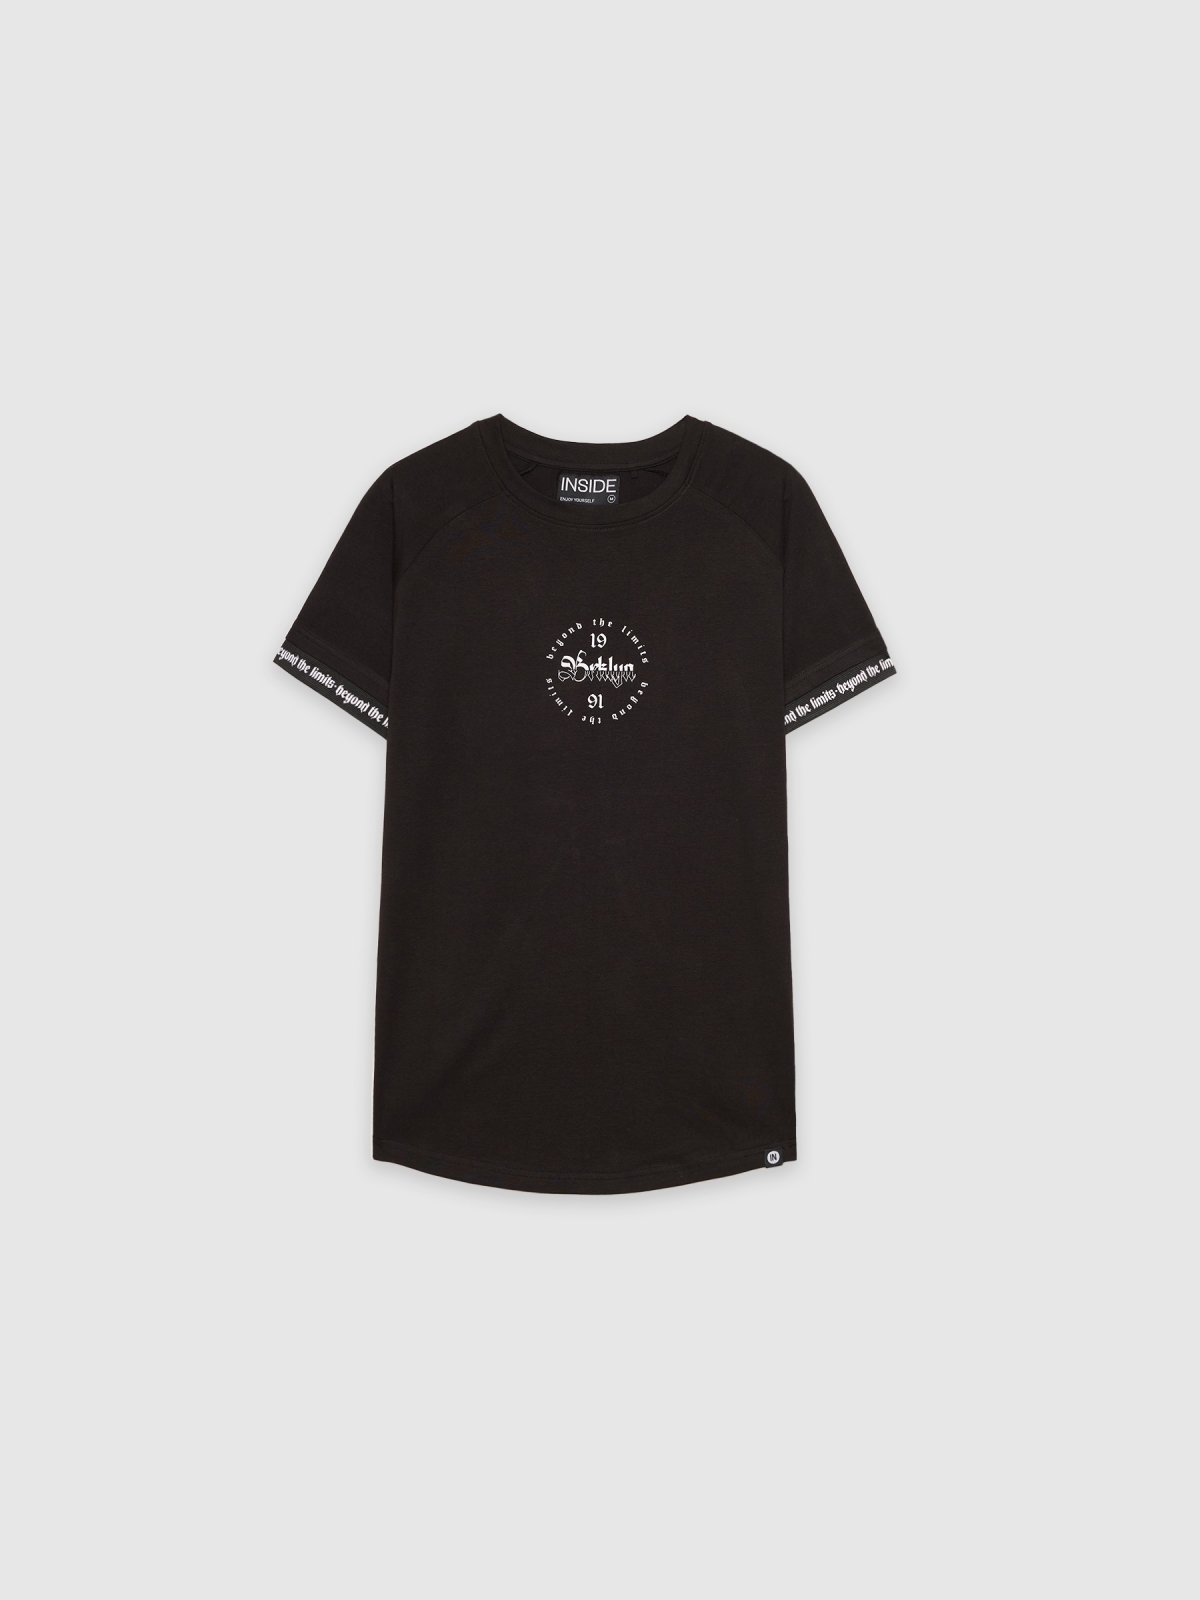  T-shirt raglan com pormenor de texto preto